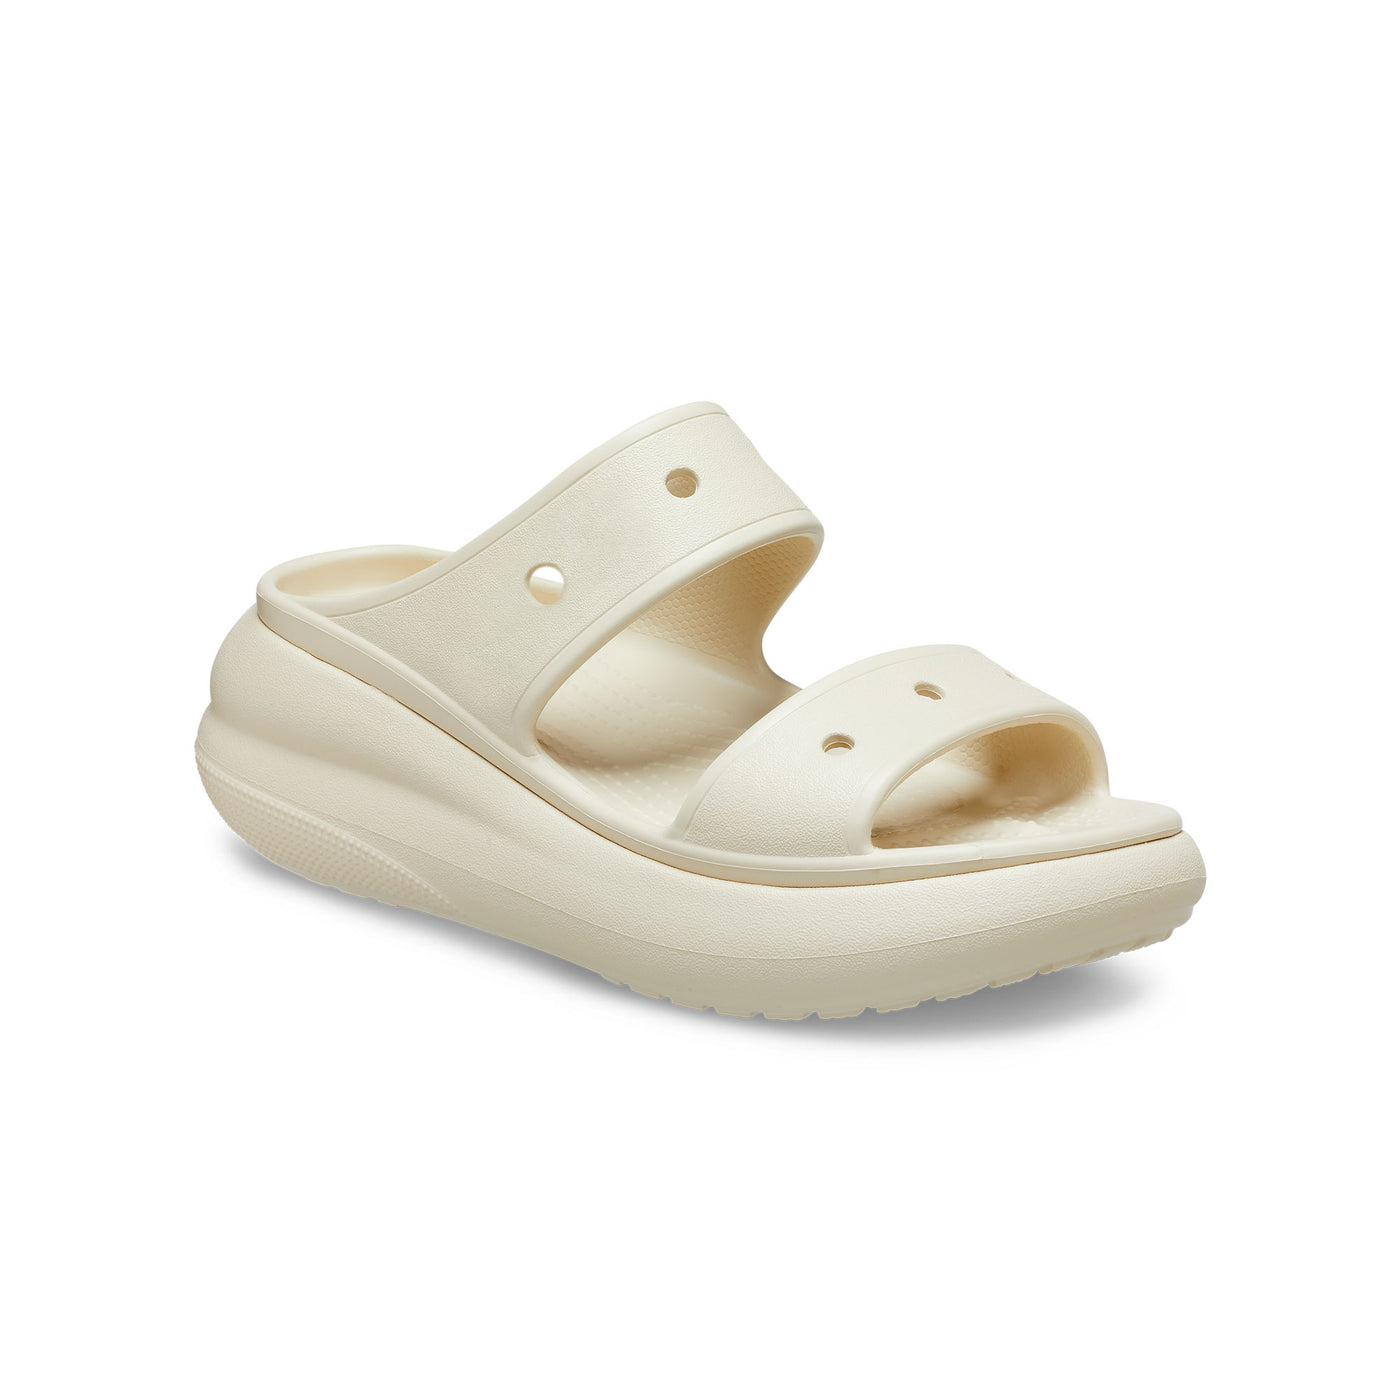 Unisex Crocs Classic Crush Sandals